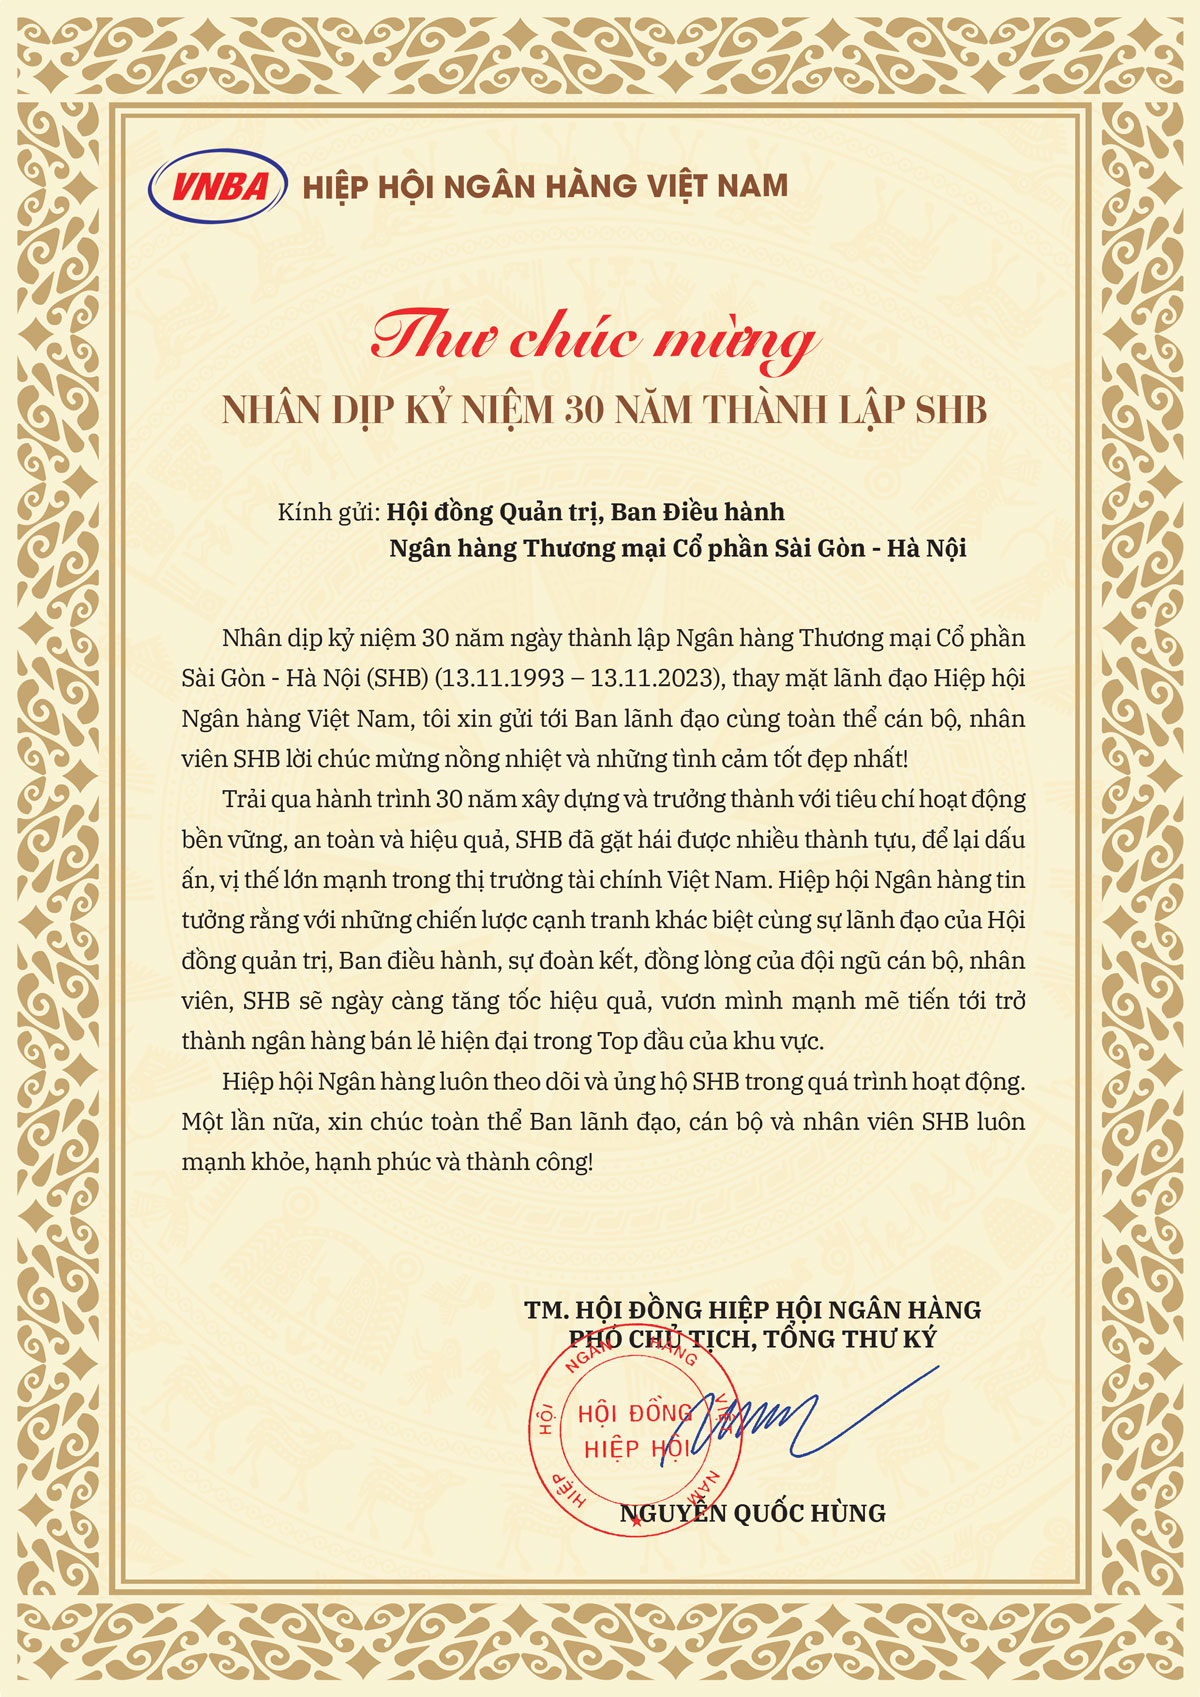 Hiệp hội Ngân hàng Việt Nam chúc mừng SHB nhân dịp kỷ niệm 30 năm thành lập